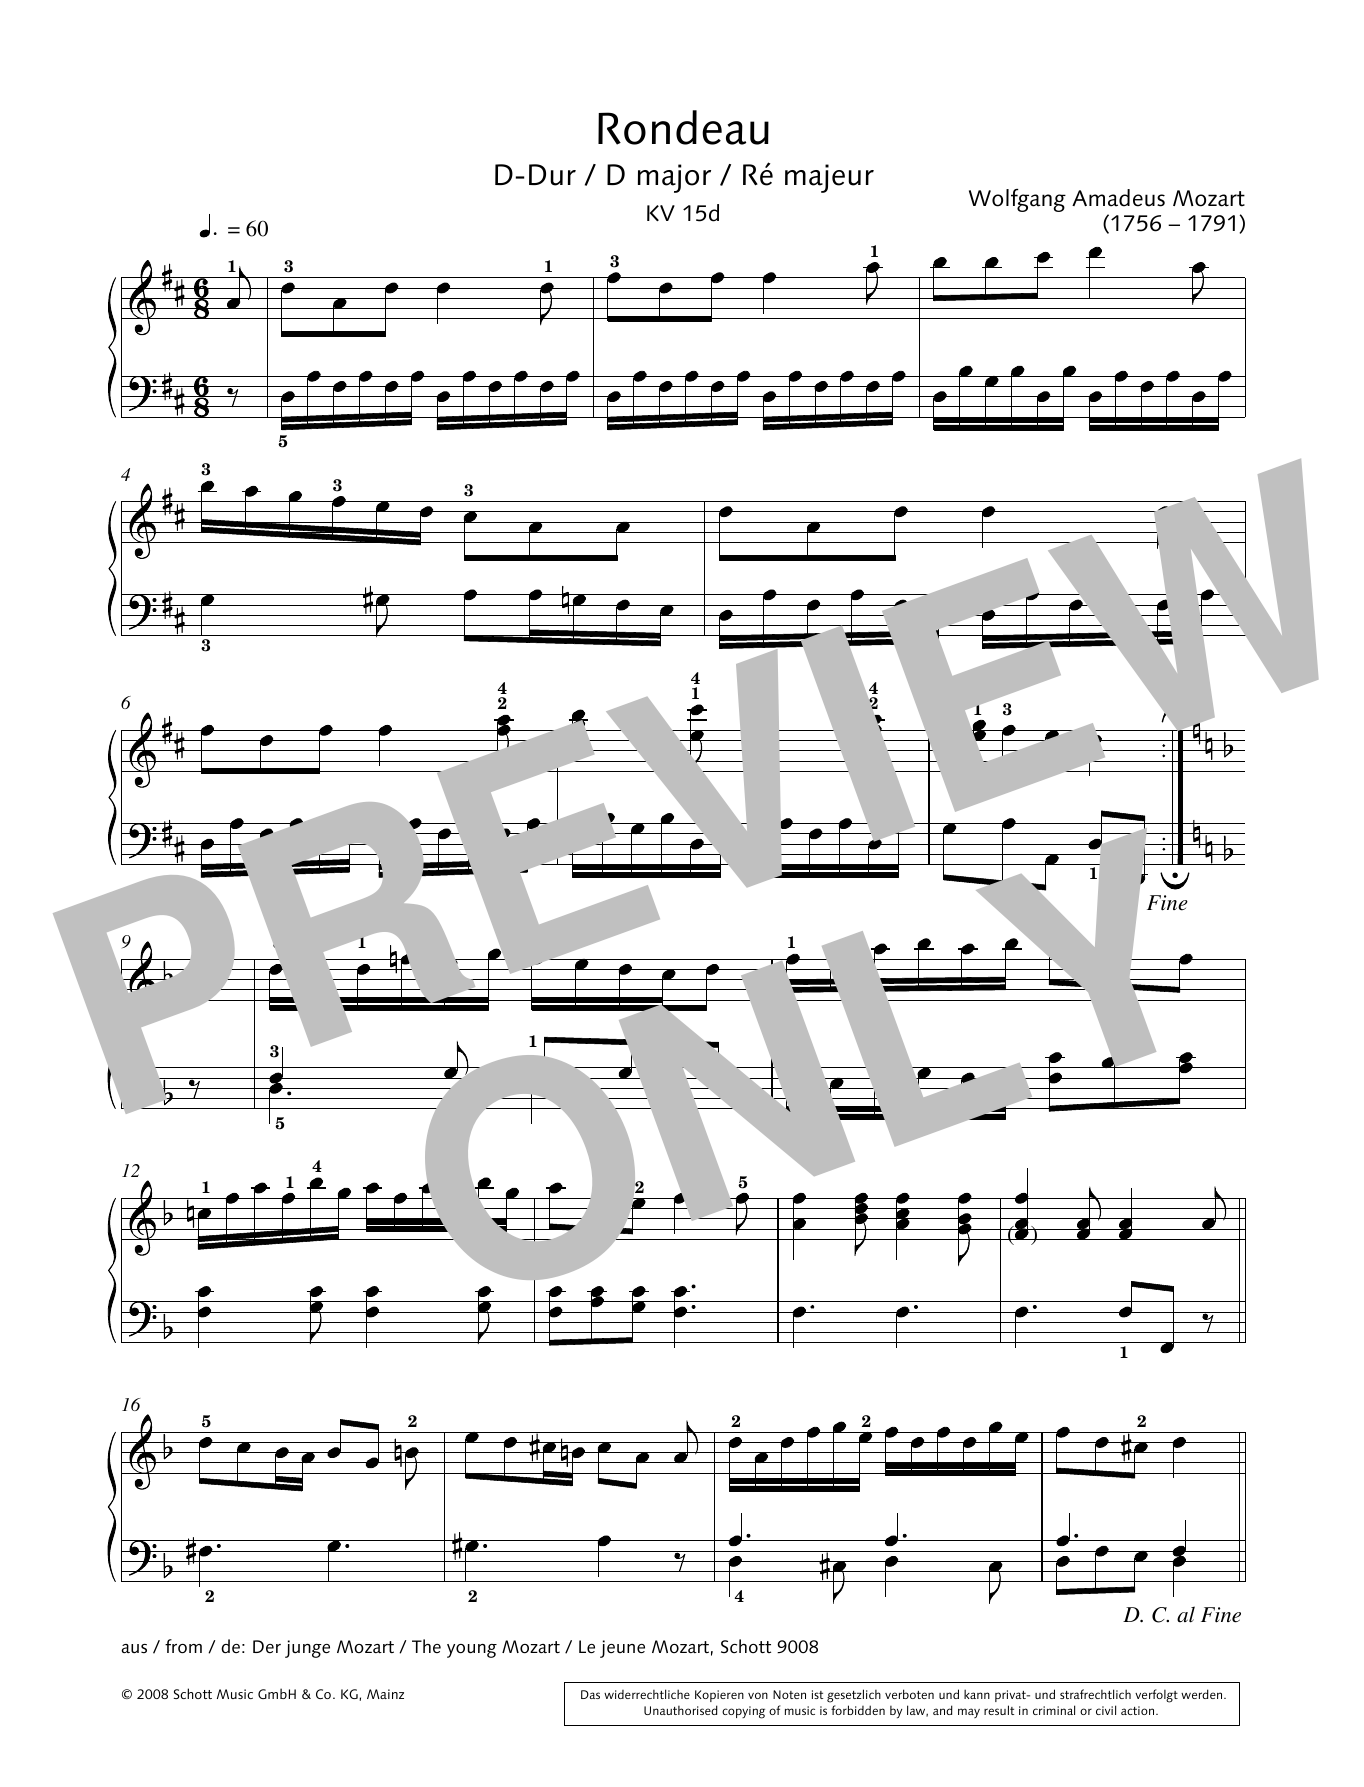 Download Hans-Gunter Heumann Rondeau in D major Sheet Music